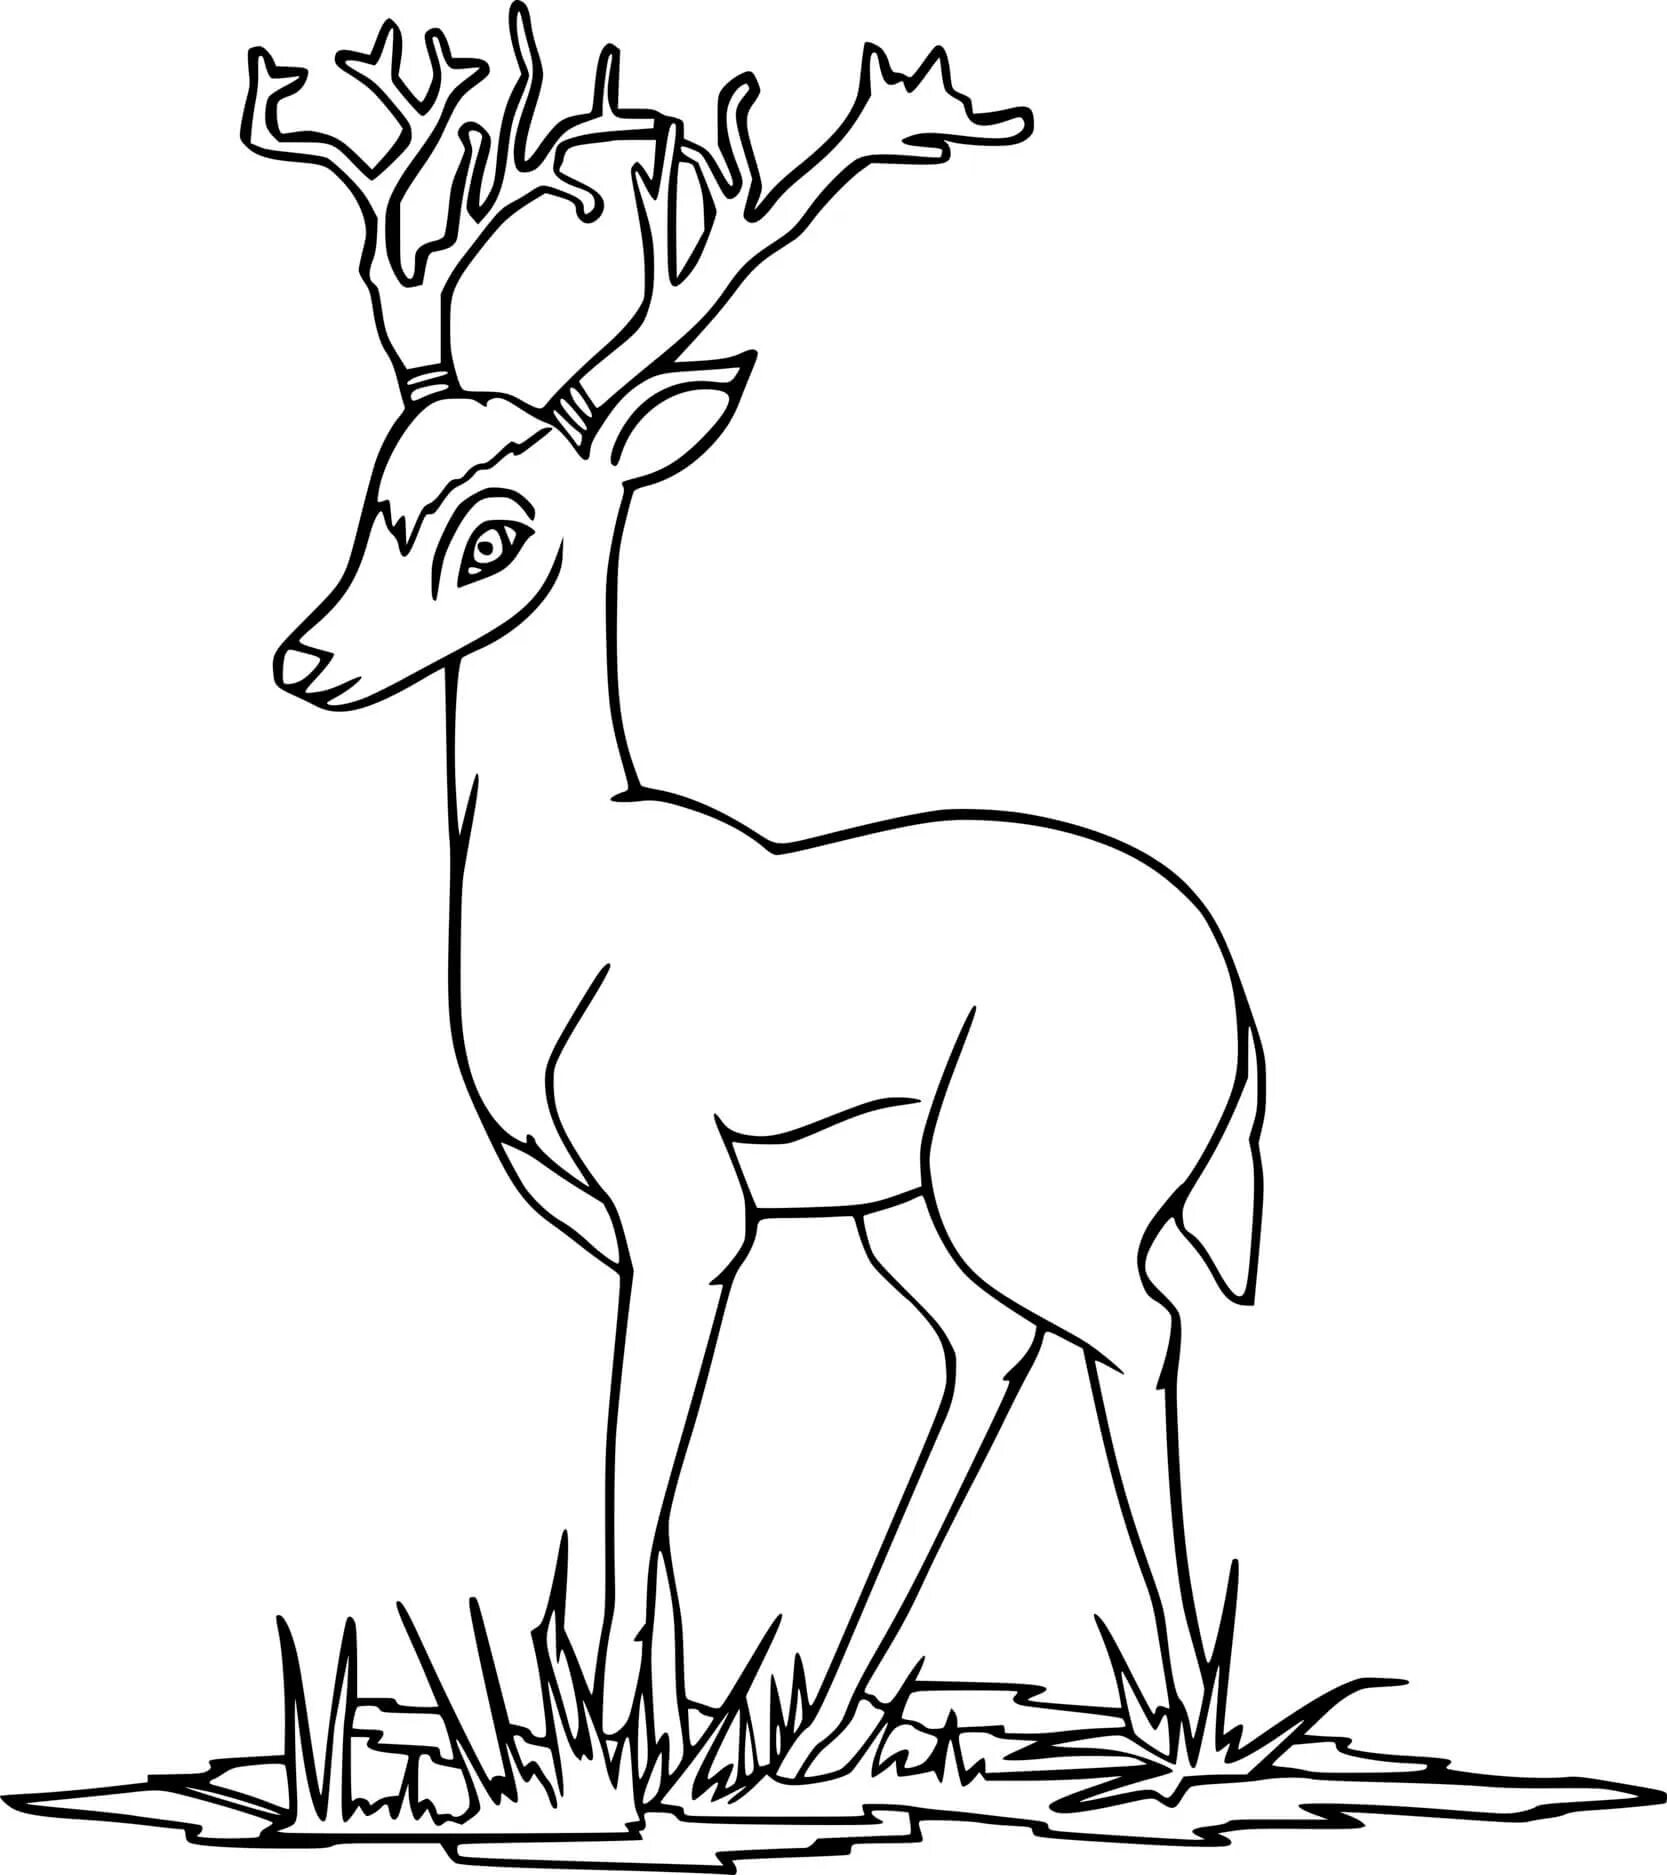 Violent roe deer coloring book for children